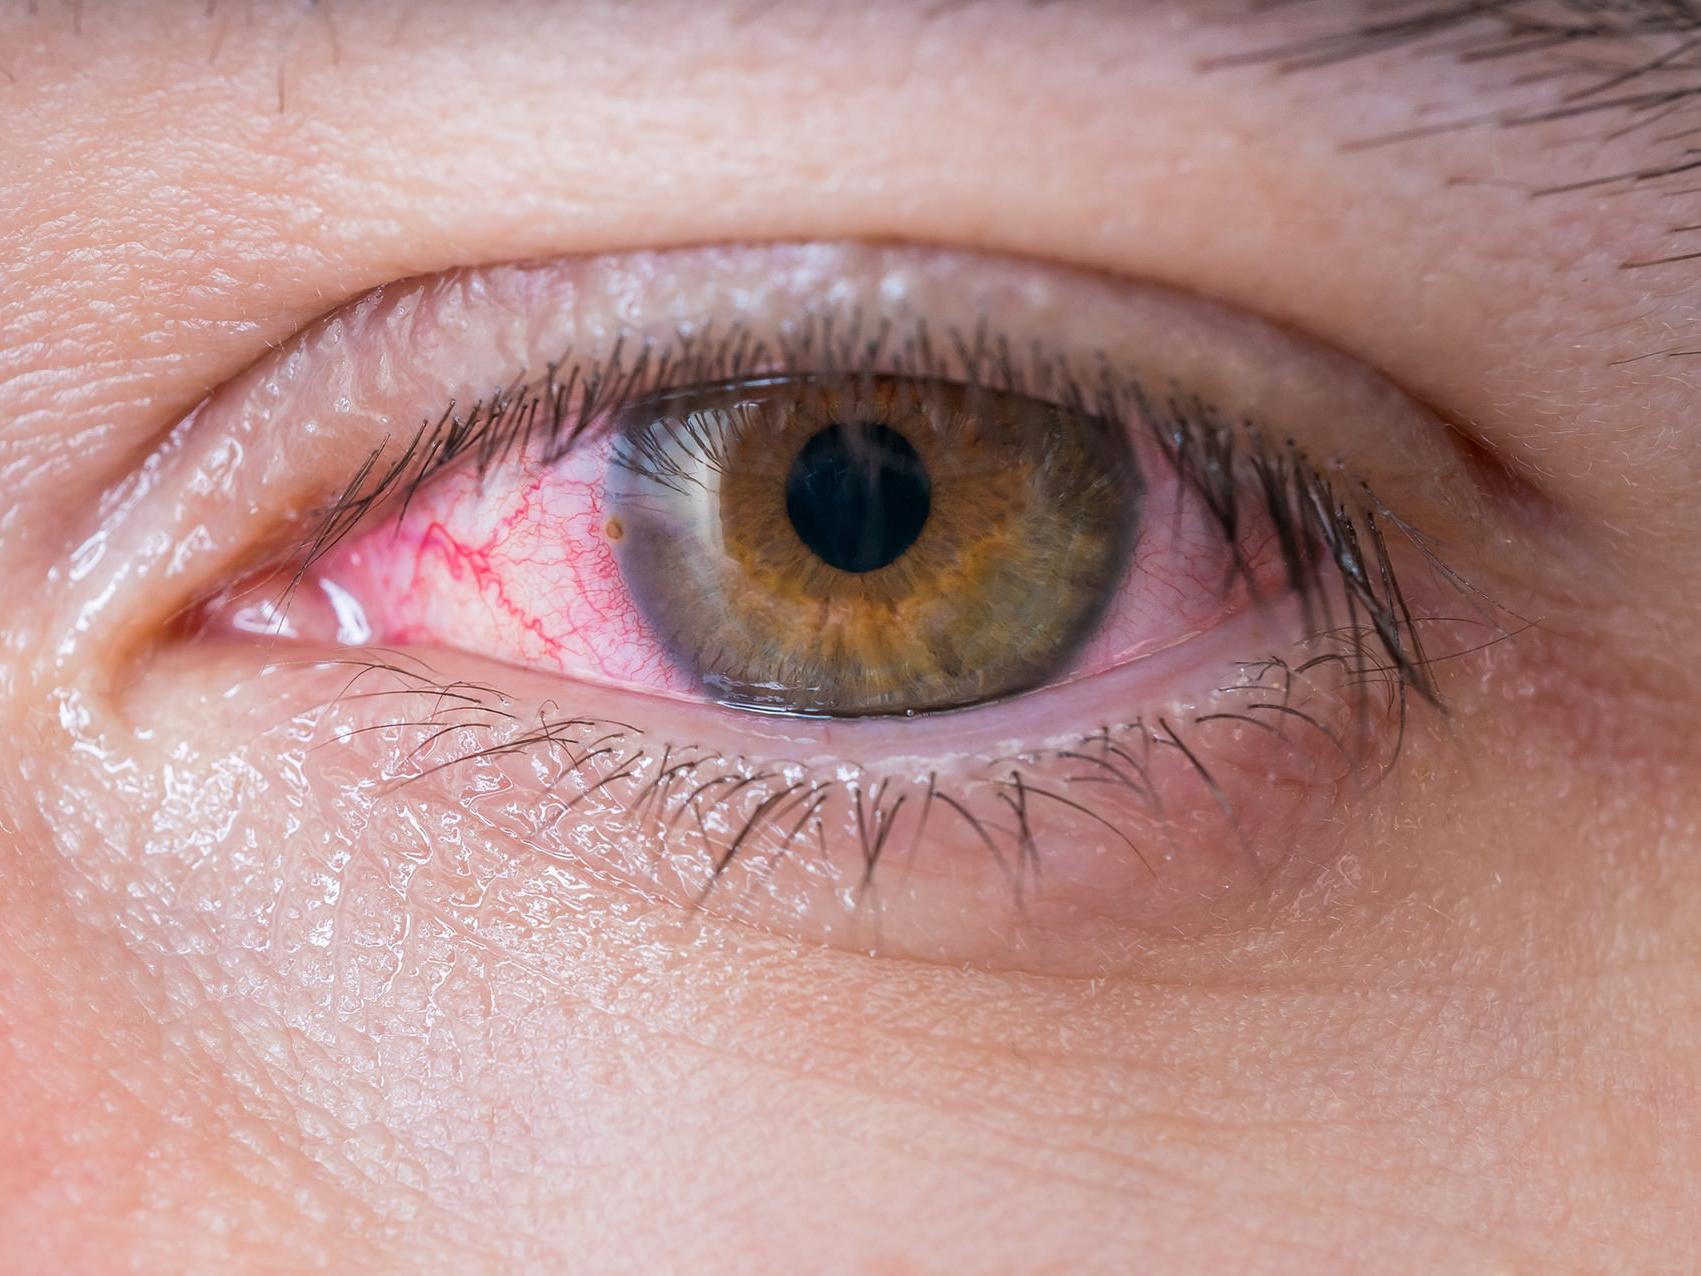 画像は、目の危険の潜在的な可能性の兆候を示す、不健康な目のクローズアップです。 